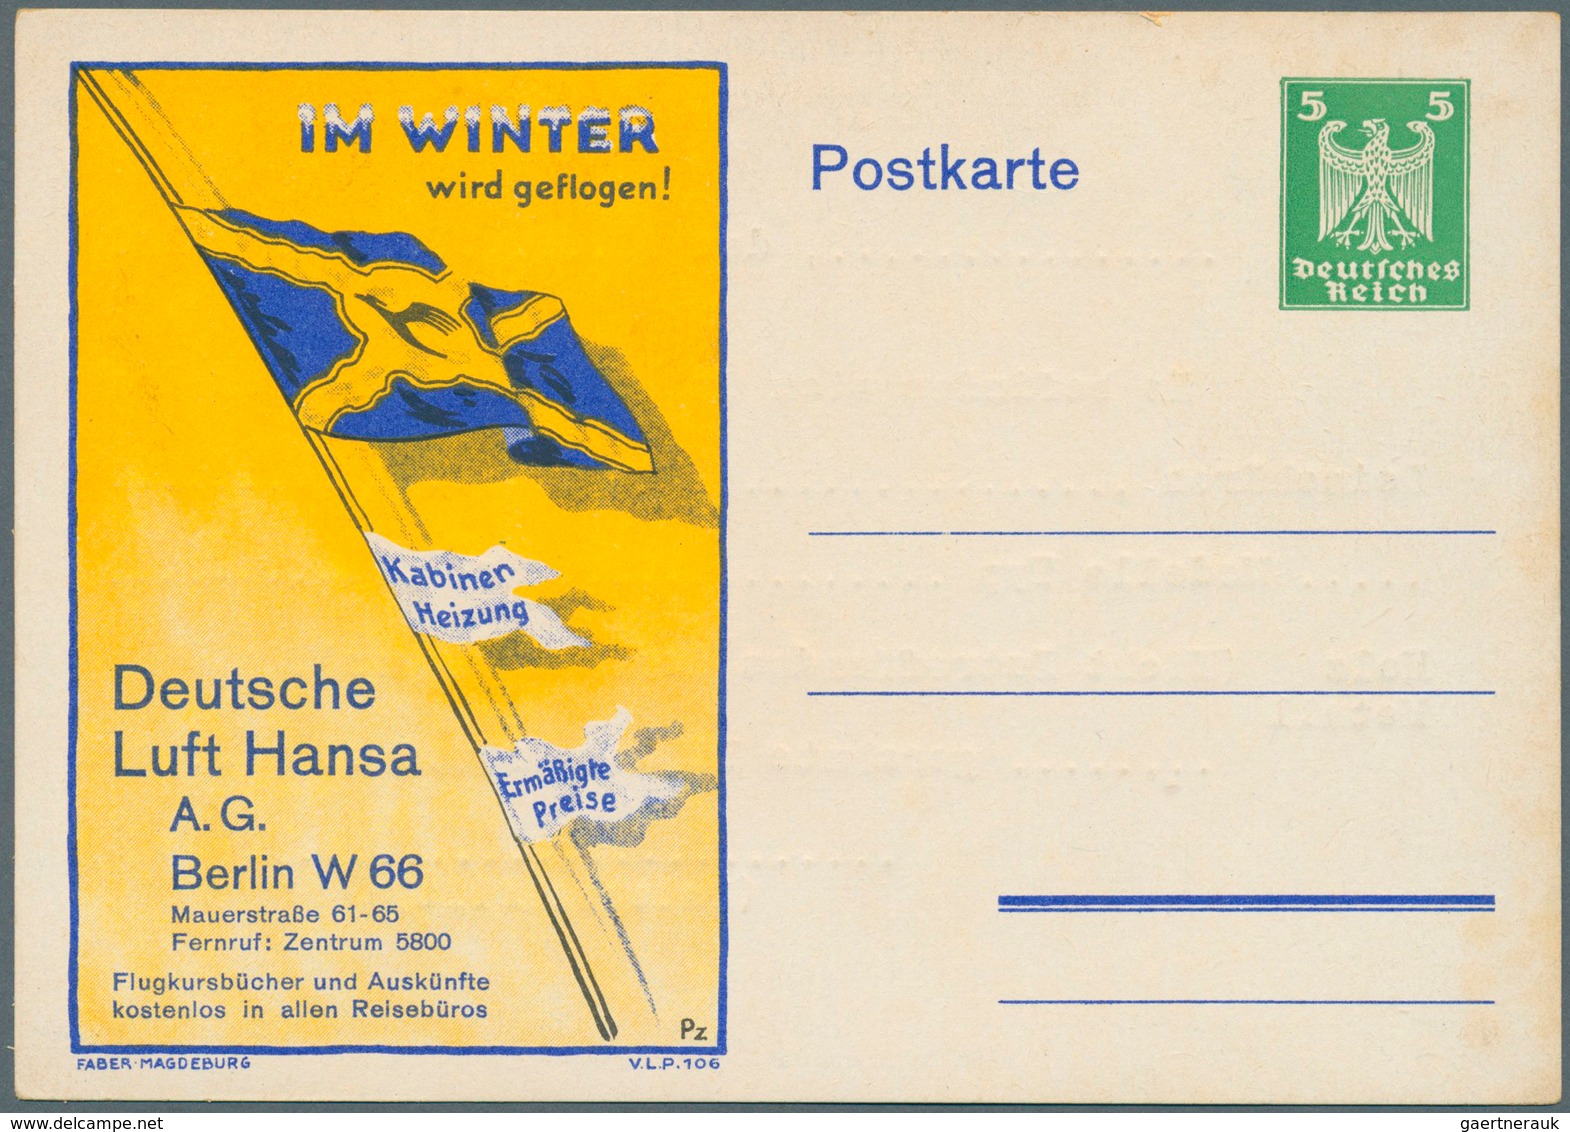 Deutsches Reich - Ganzsachen: 1921/1925, Posten von 572 Privat-Postkarten aus PP 50 bis PP 81, ungeb